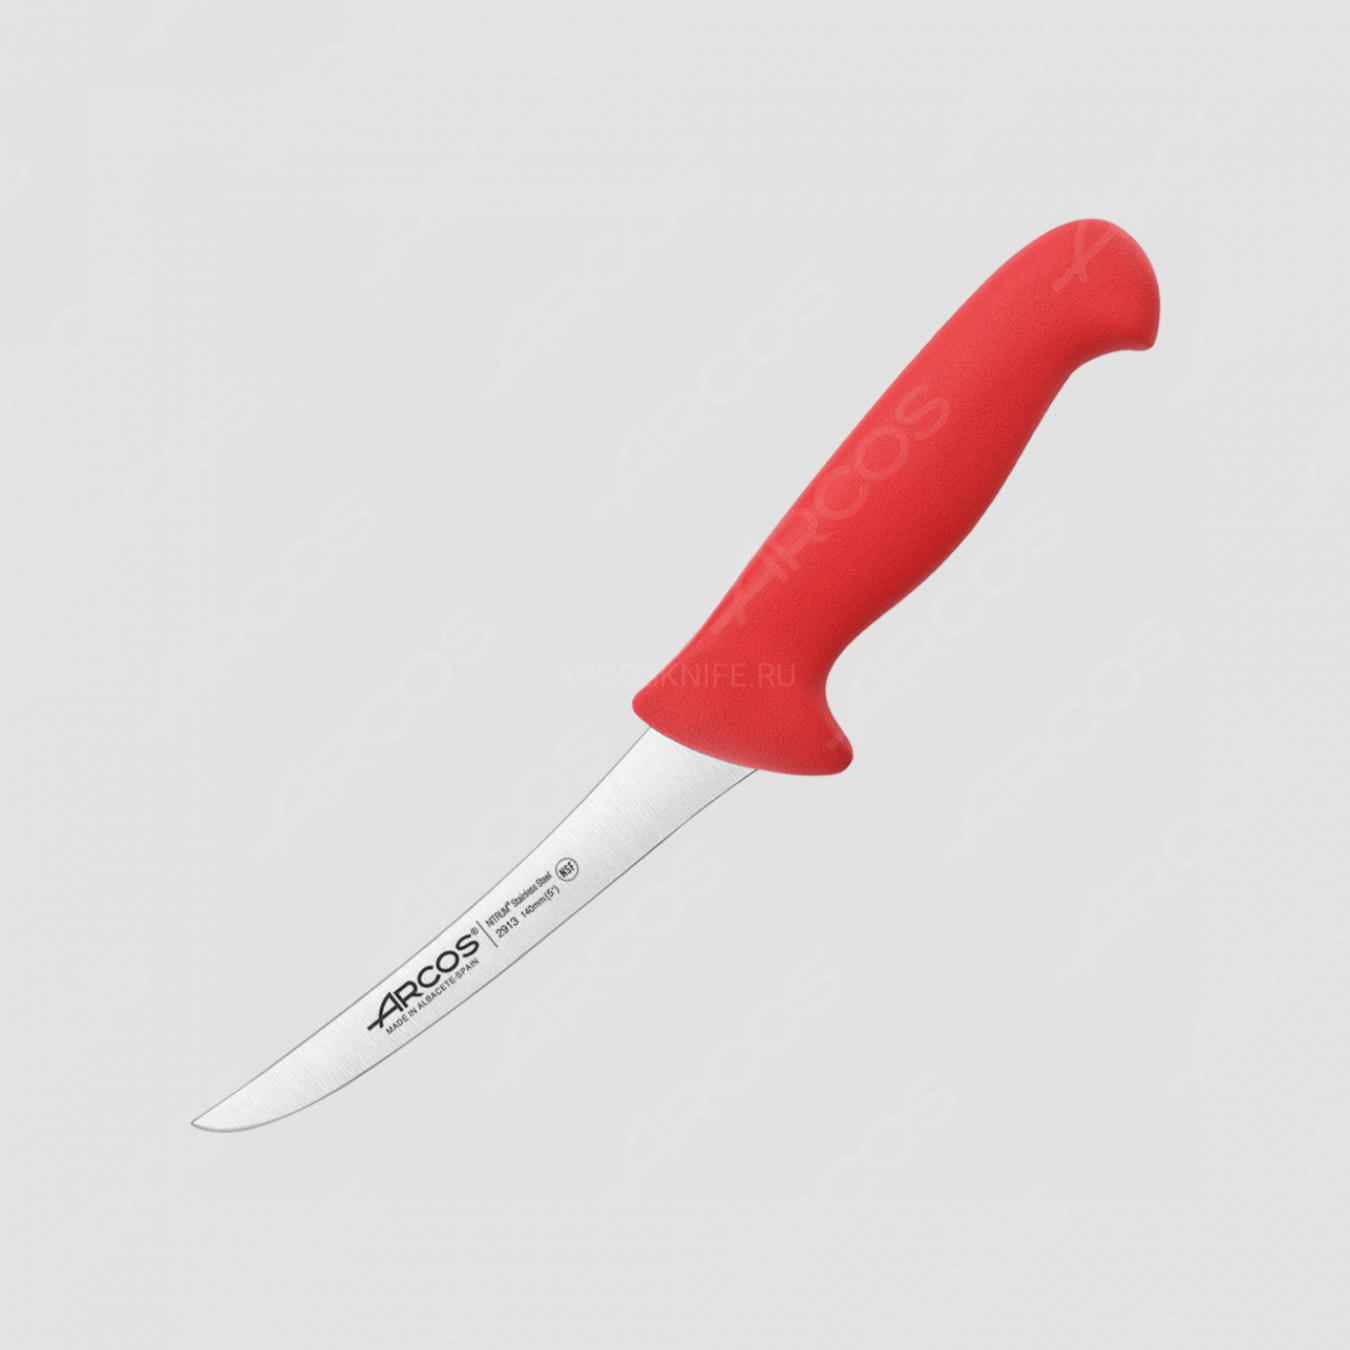 Нож кухонный обвалочный 14 см, рукоять - красная, серия 2900, ARCOS, Испания